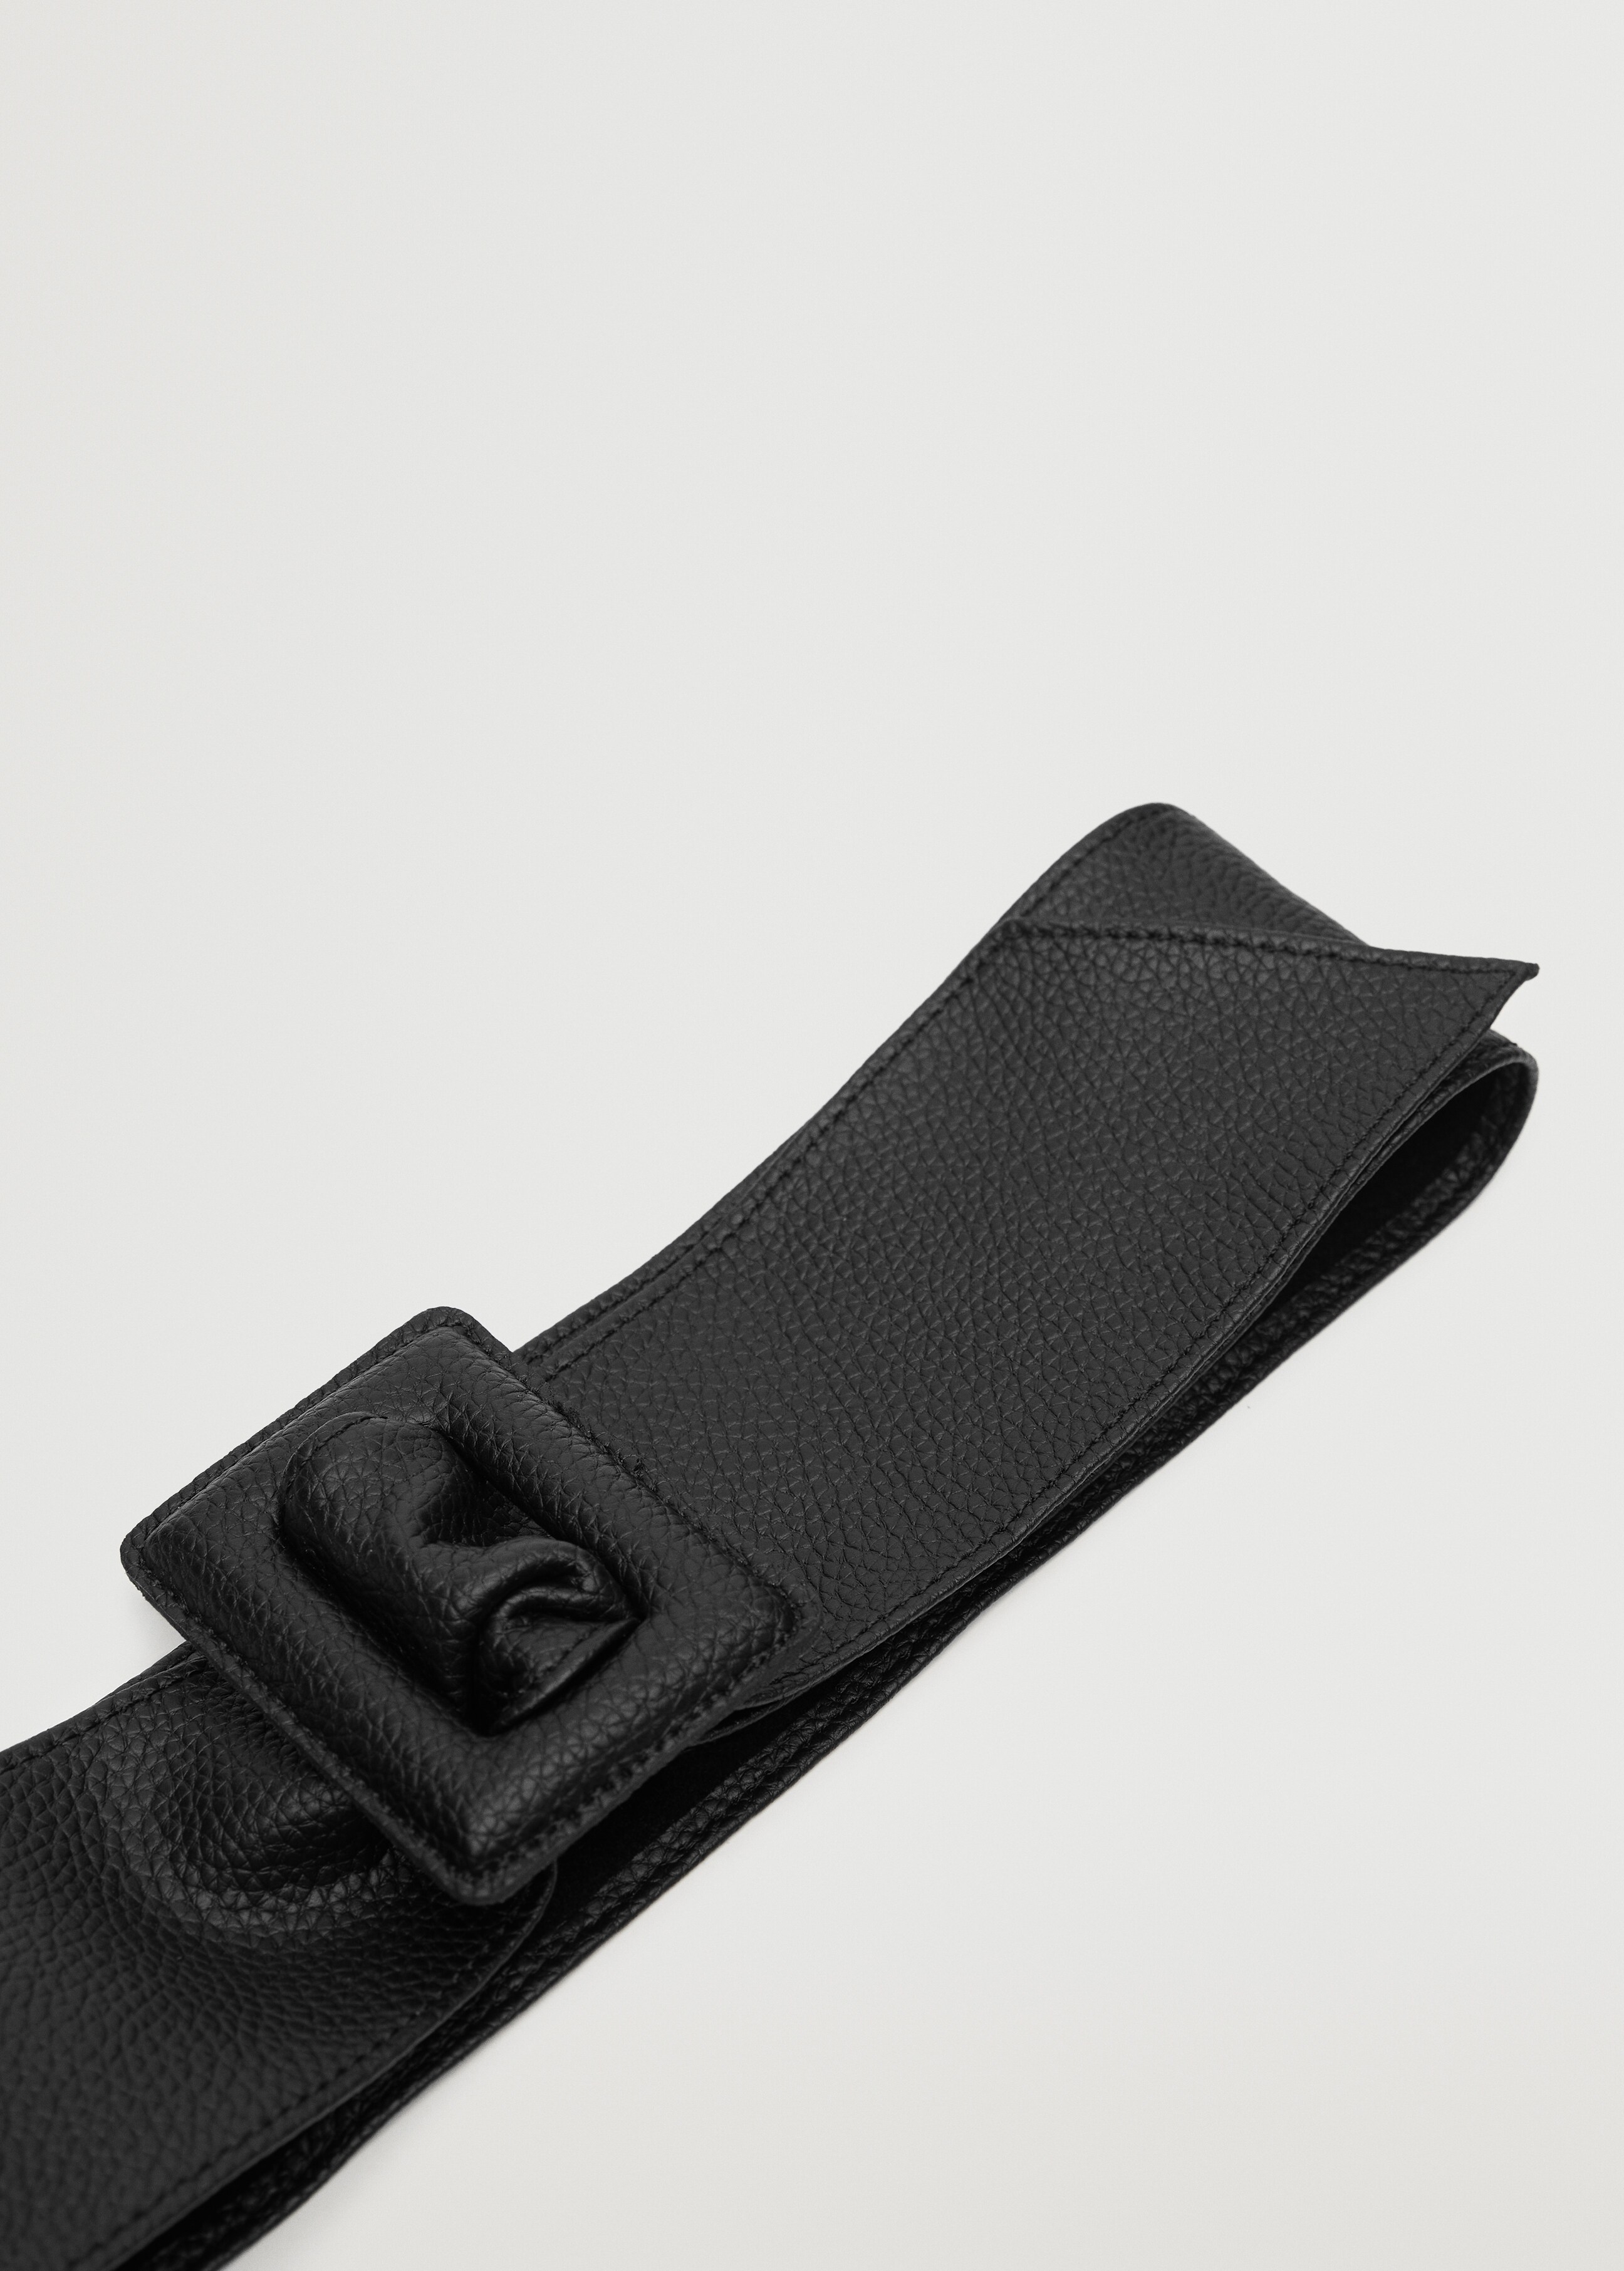 Pebbled leather belt - Medium plane